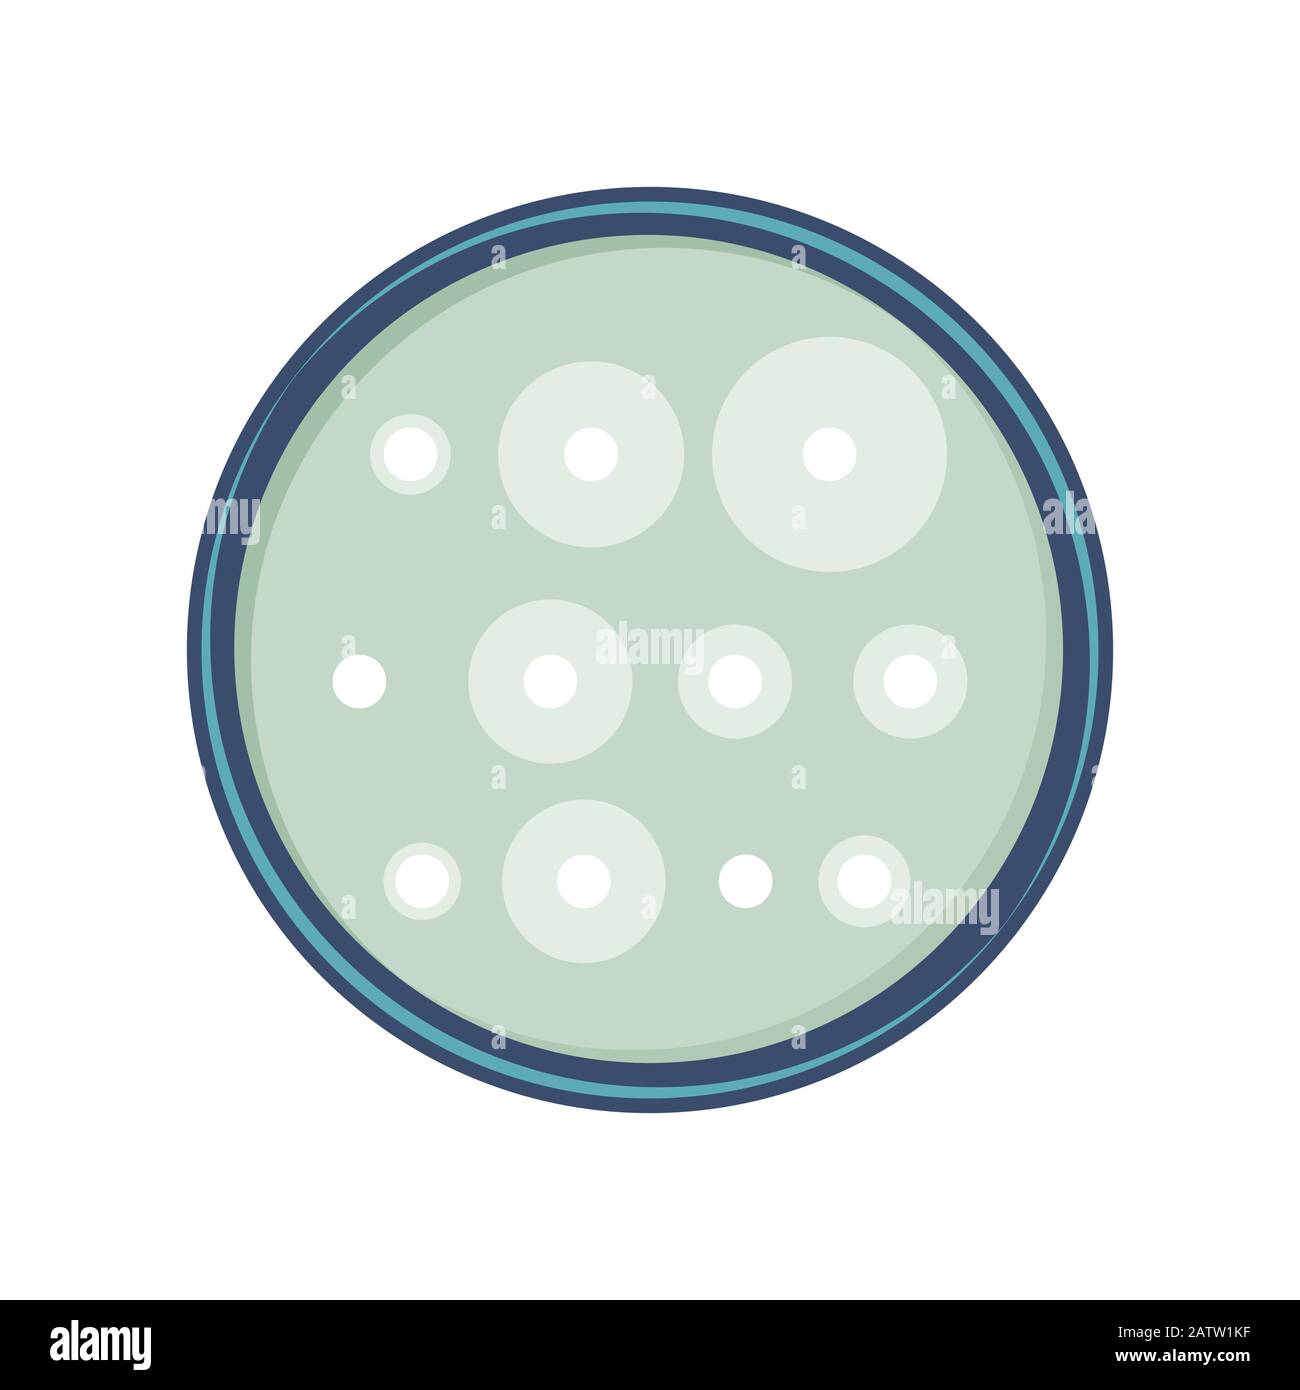 Analisi della sensibilità antibiotica dei batteri in capsule di petry, disegno piatto vettoriale. Illustrazione Vettoriale